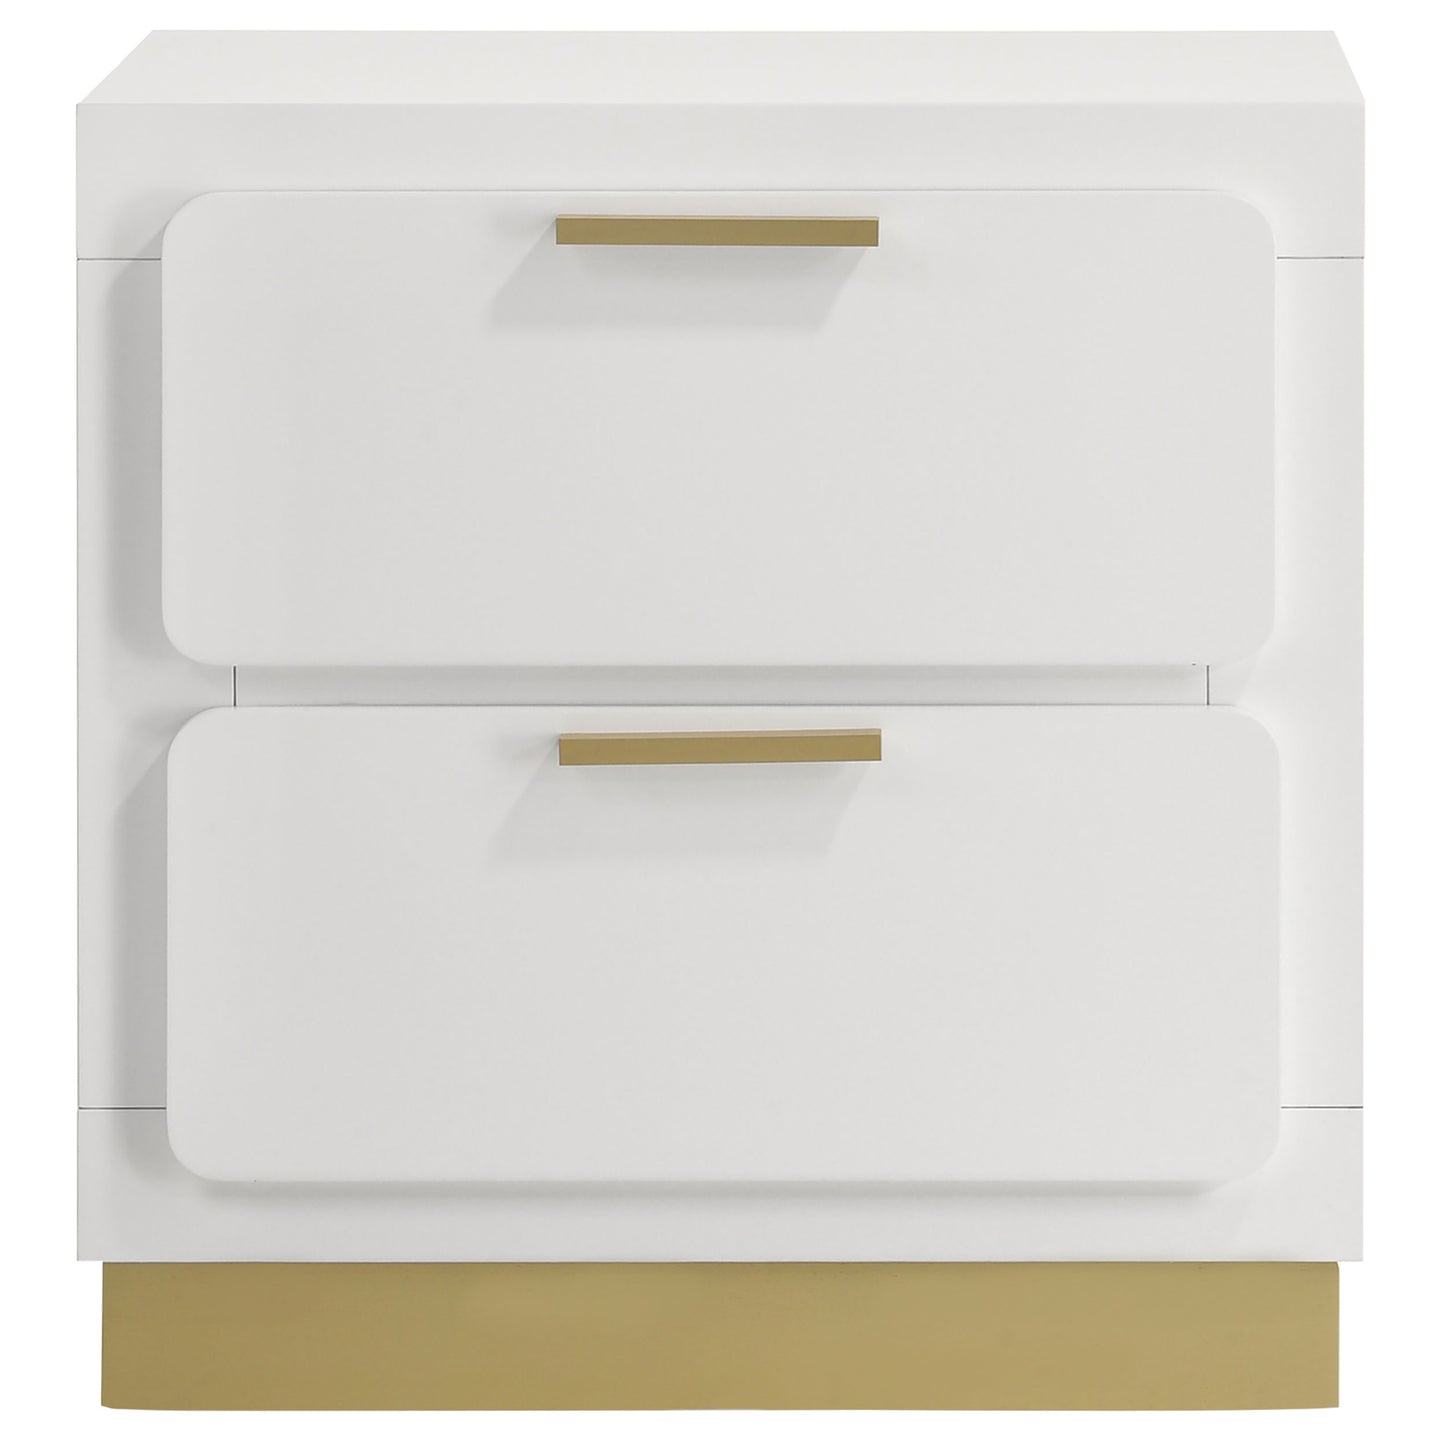 Caraway 2-drawer Nightstand White